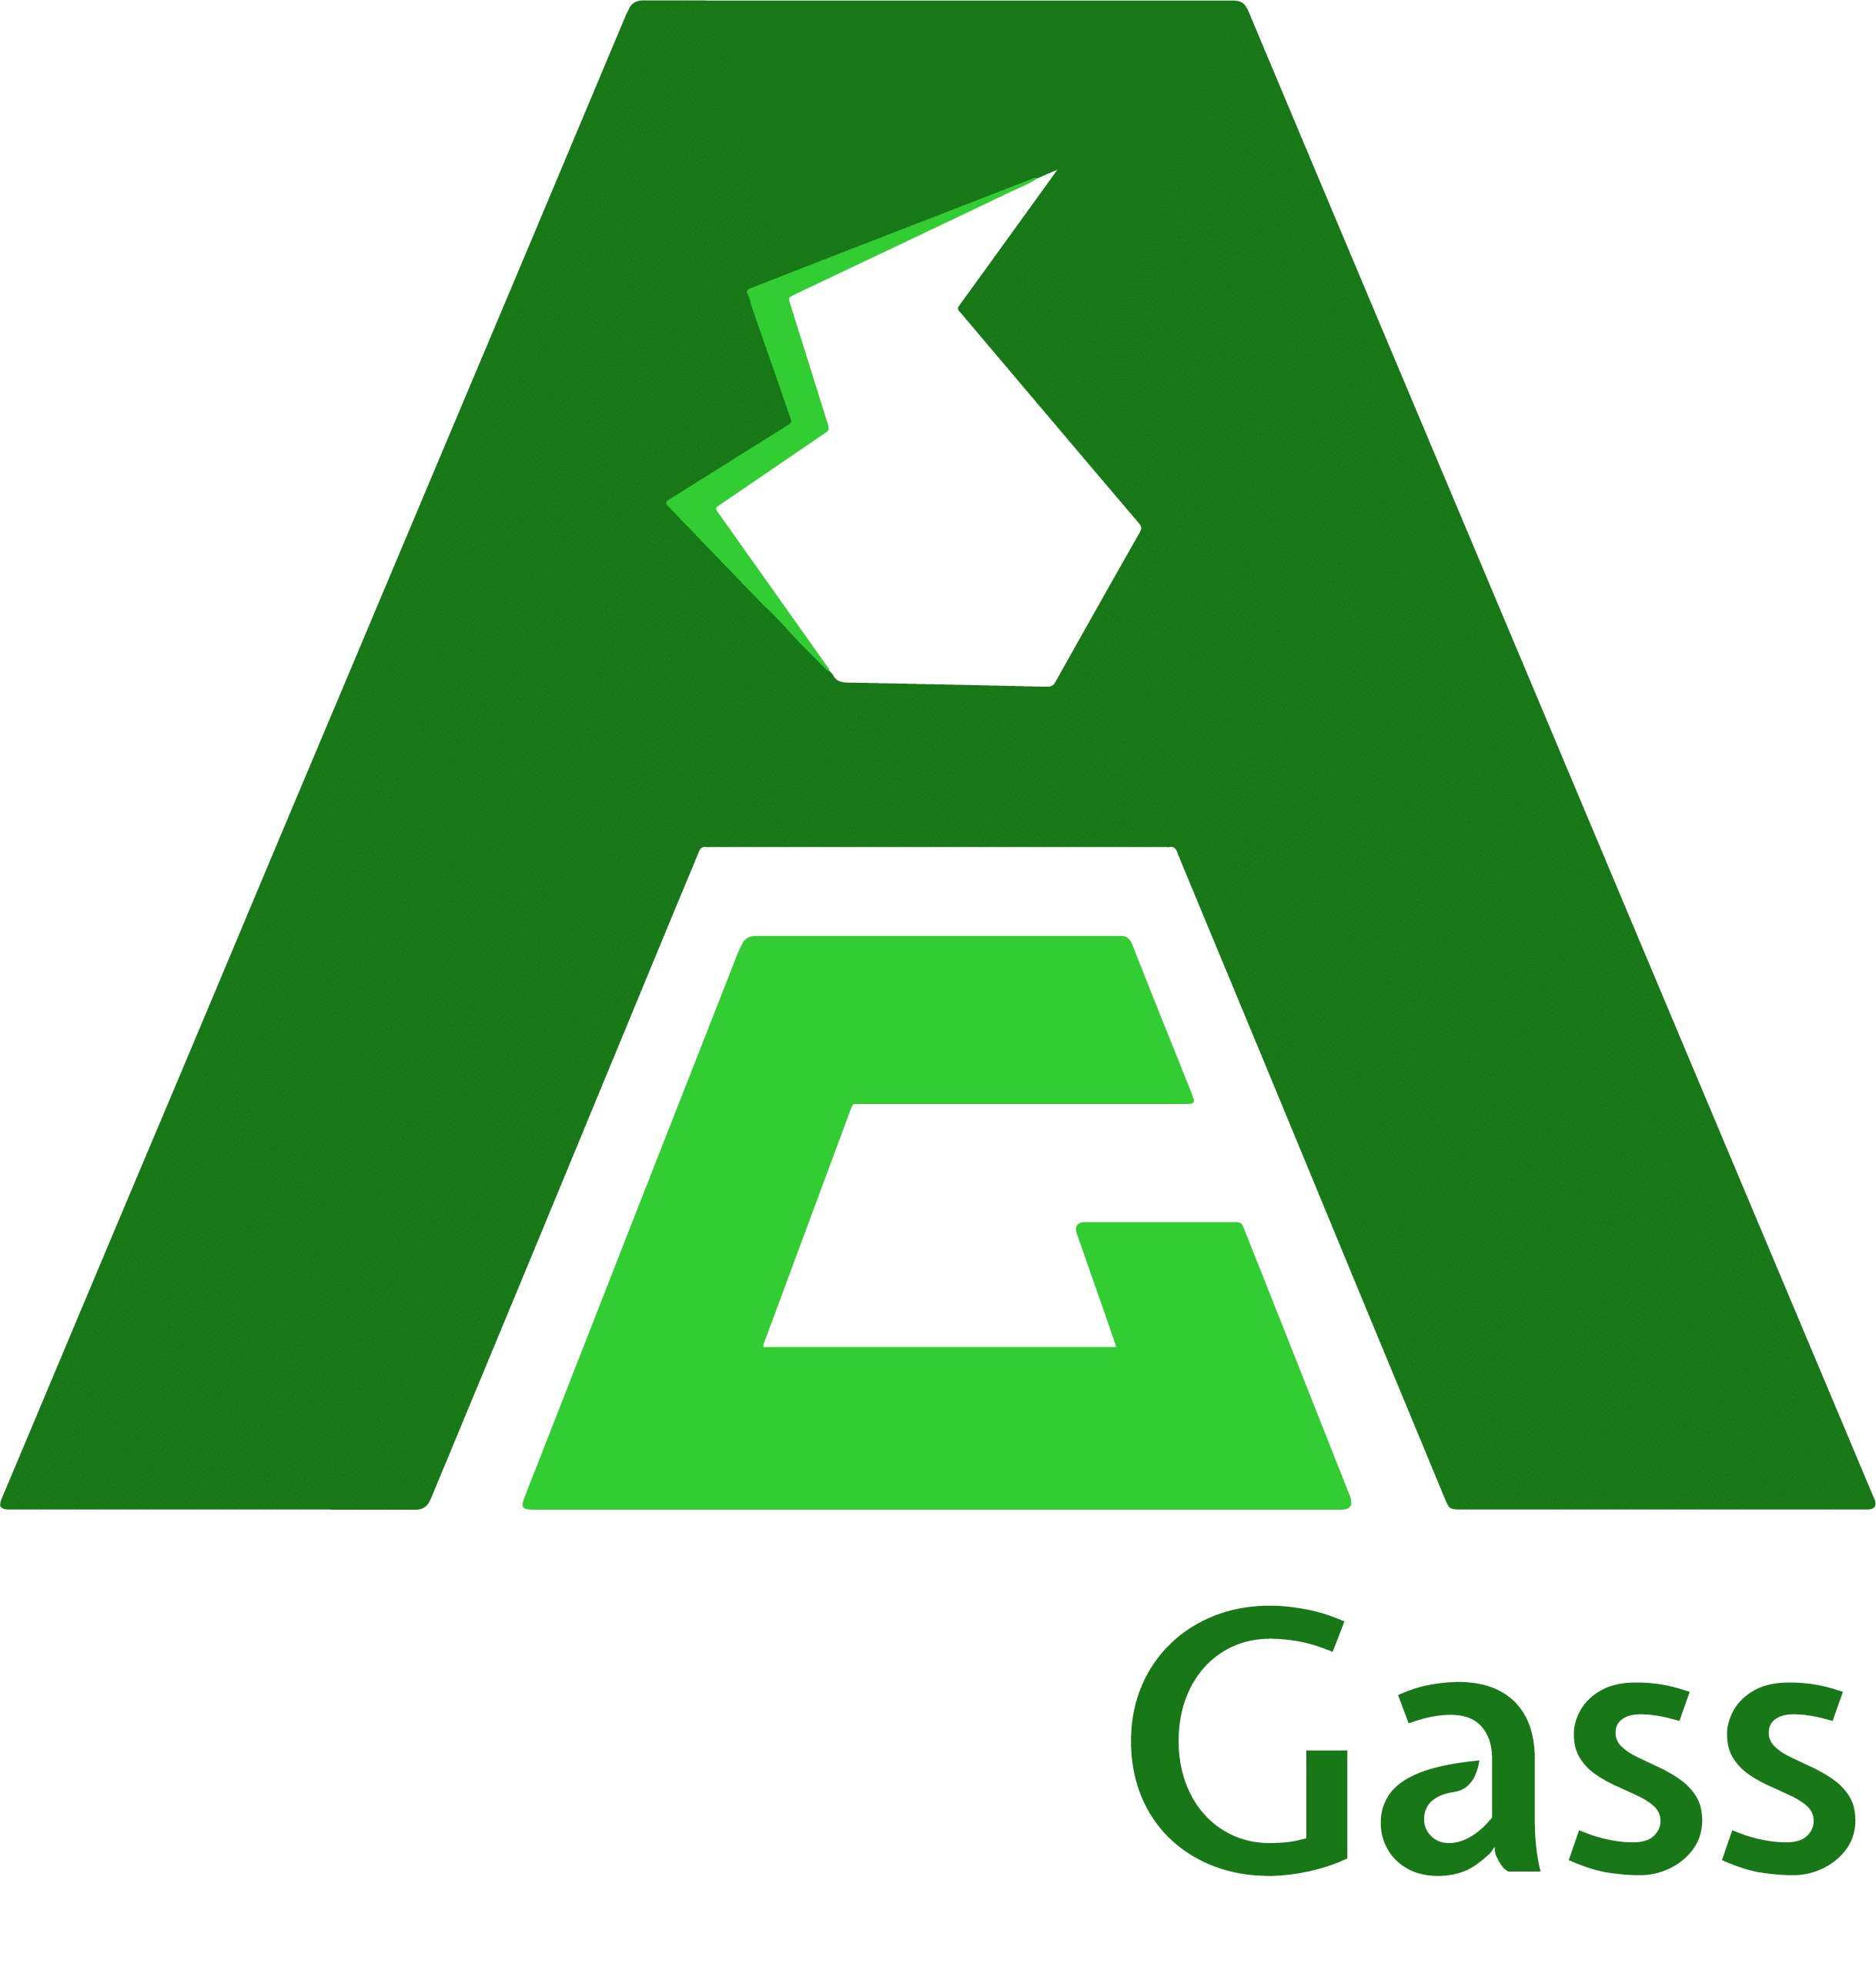 AgderGass Logo Text White